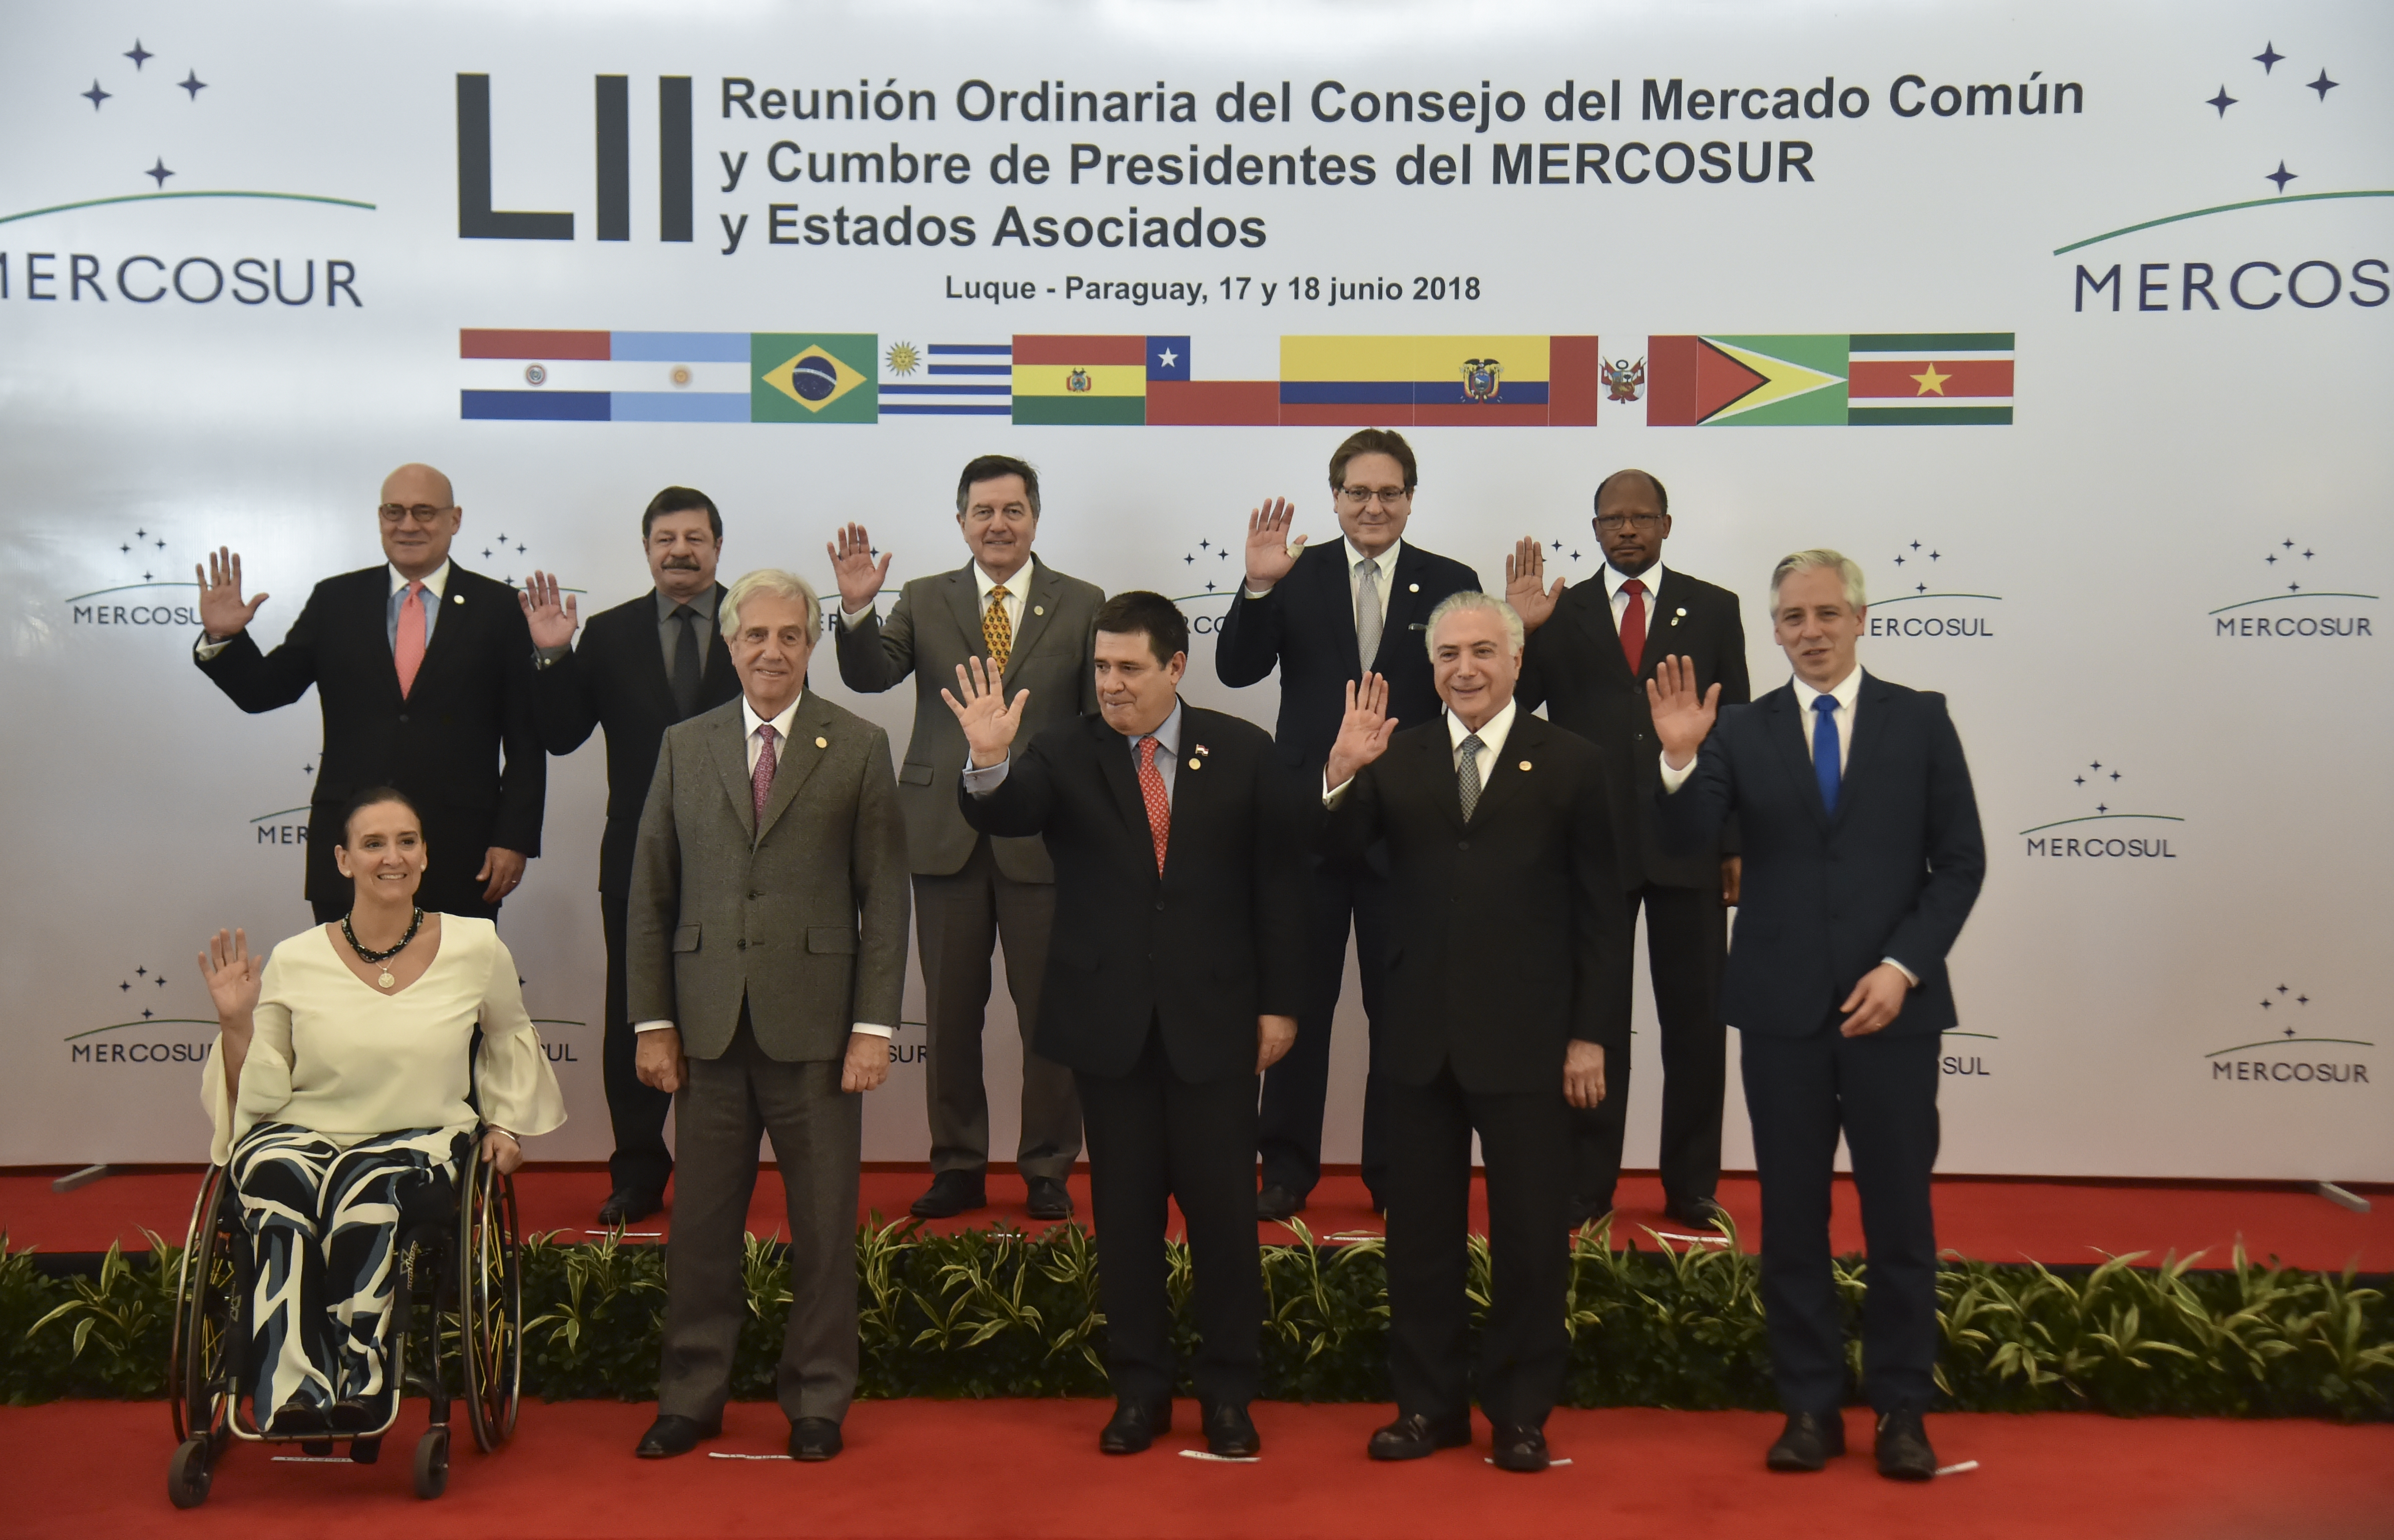 Crisis de Venezuela y acuerdo con UE en el centro de cumbre del Mercosur